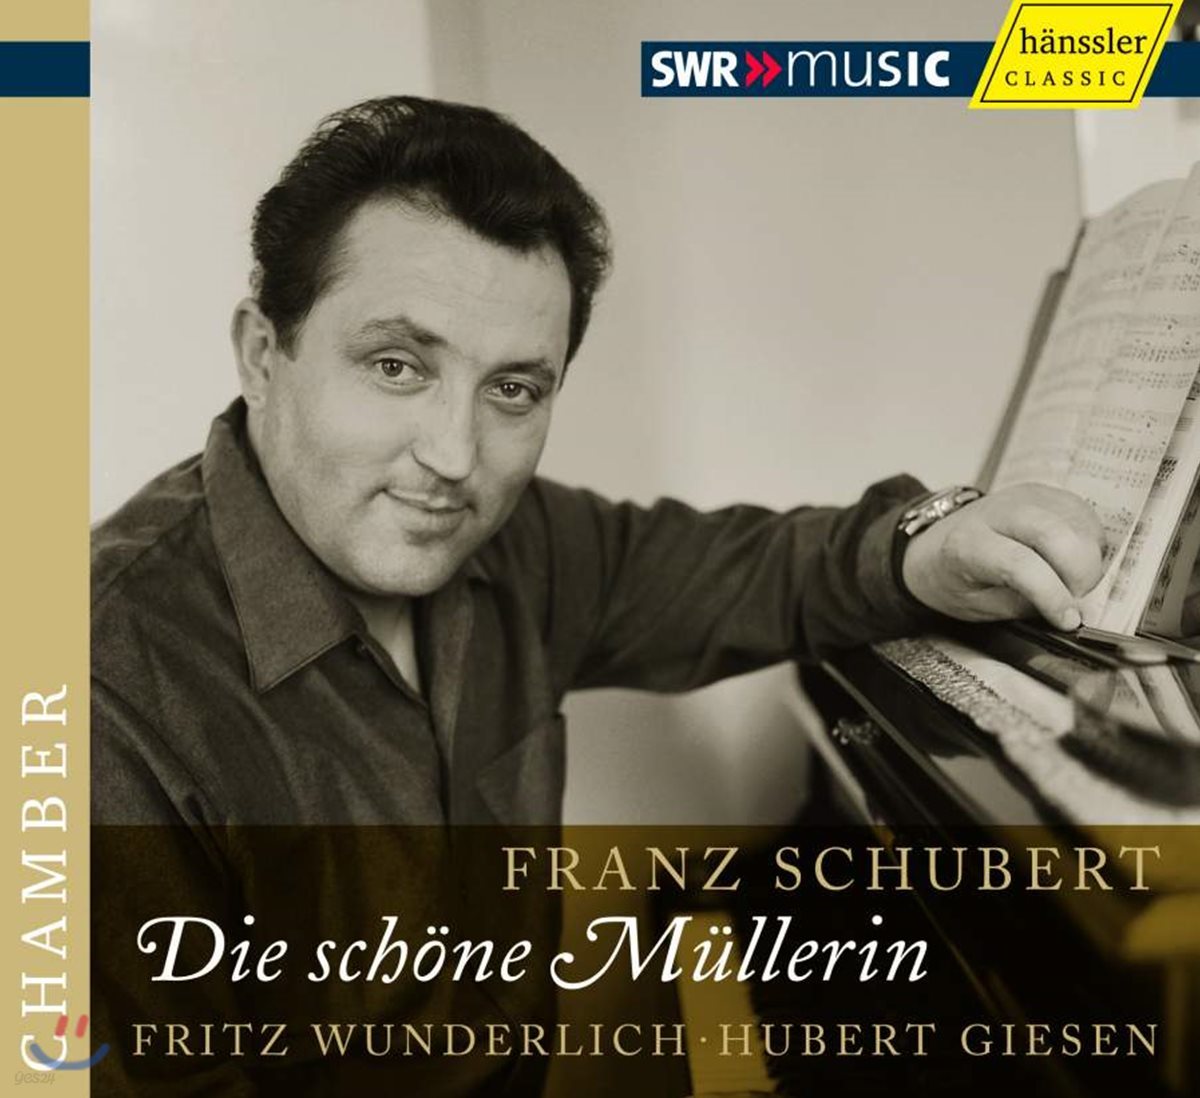 Fritz Wunderlich 슈베르트: 아름다운 물방앗간 아가씨 (Schubert: Die Schone Mullerin D795)